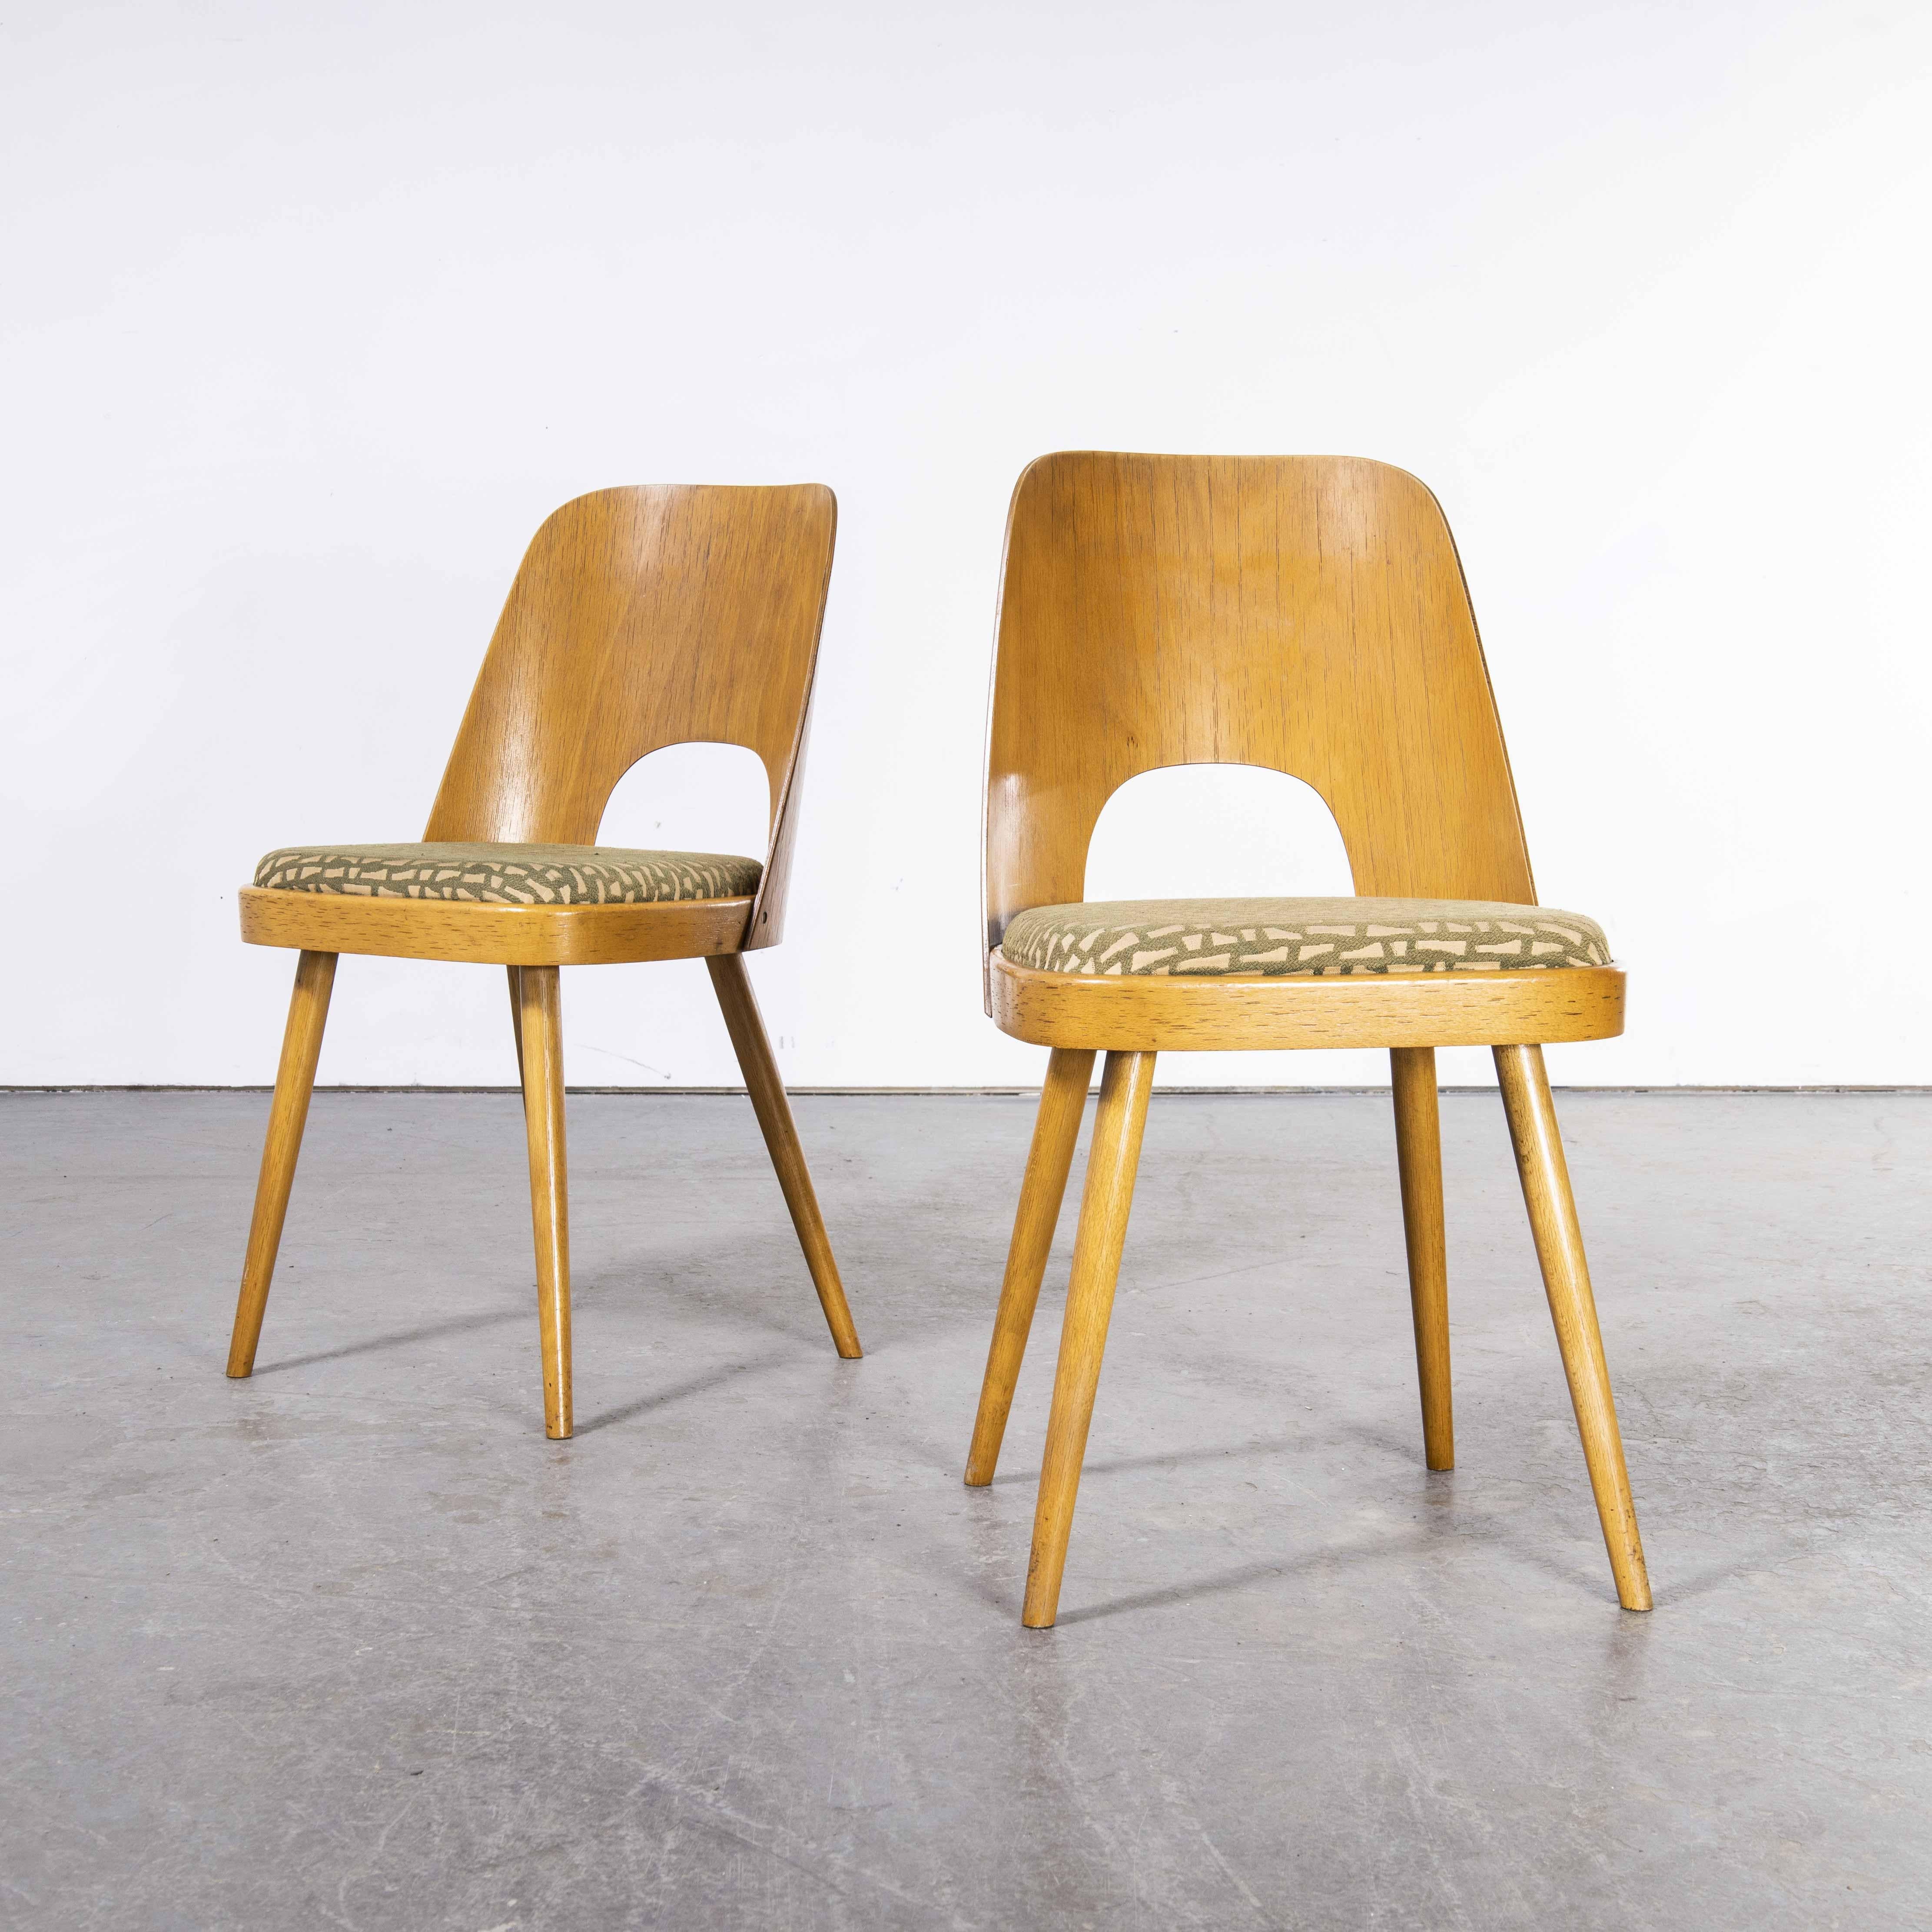 paire de chaises de salle à manger rembourrées des années 1960 - Oswald Haerdtl
1960's Paire de chaises de salle à manger rembourrées - Oswald Haerdtl. Ces chaises ont été produites par la célèbre entreprise tchèque Ton, qui produit encore